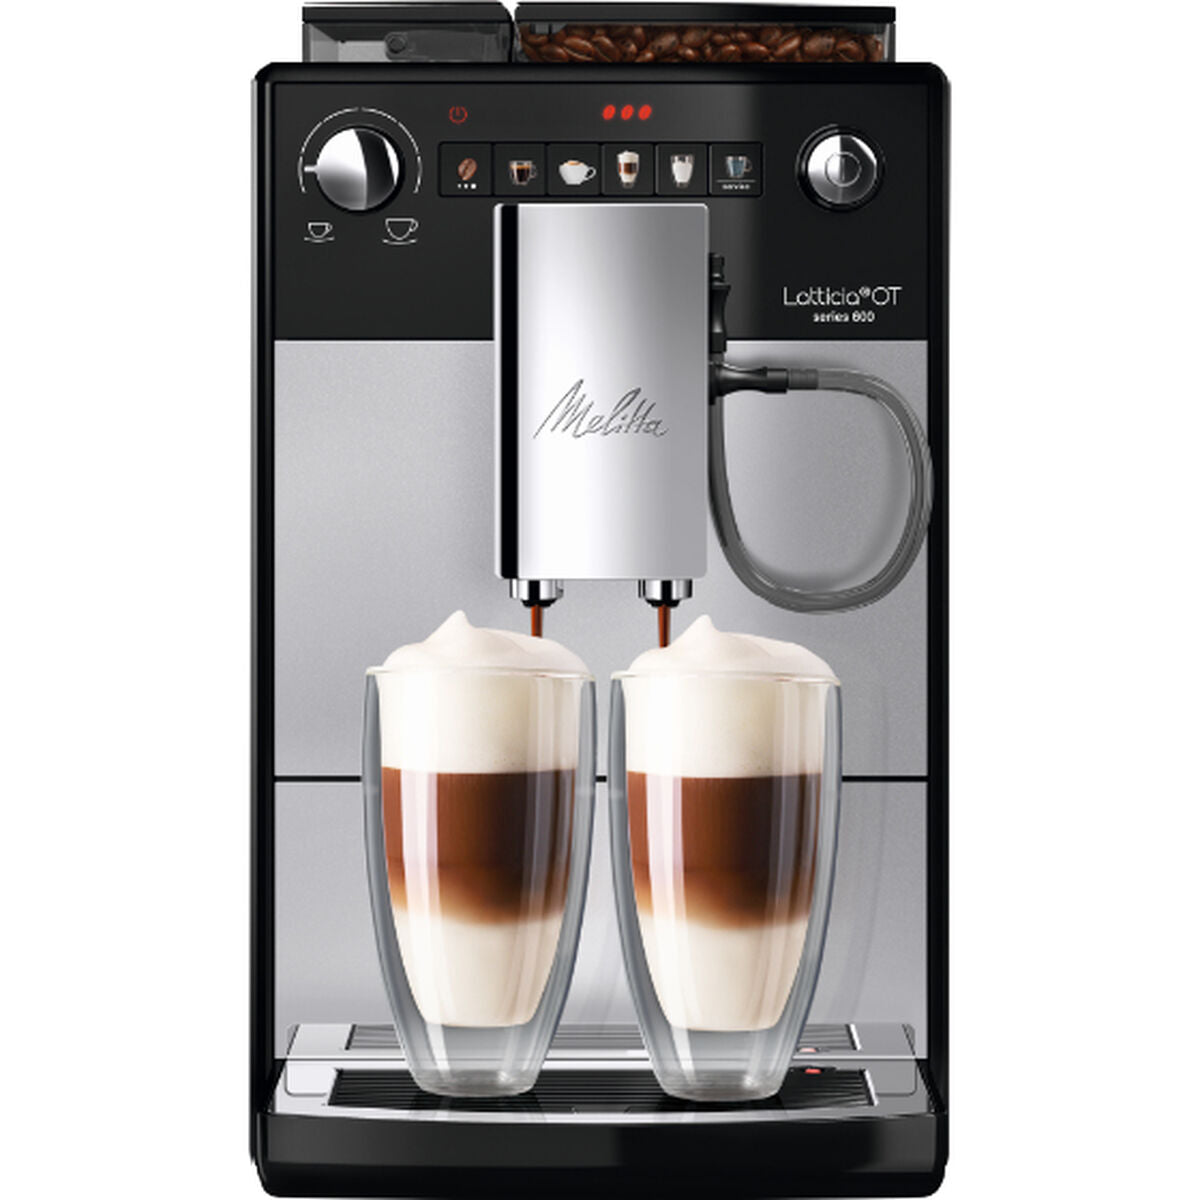 Superautomatische Kaffeemaschine Melitta Latticia F300-101 Schwarz Silberfarben 1450 W 1,5 L - CA International 